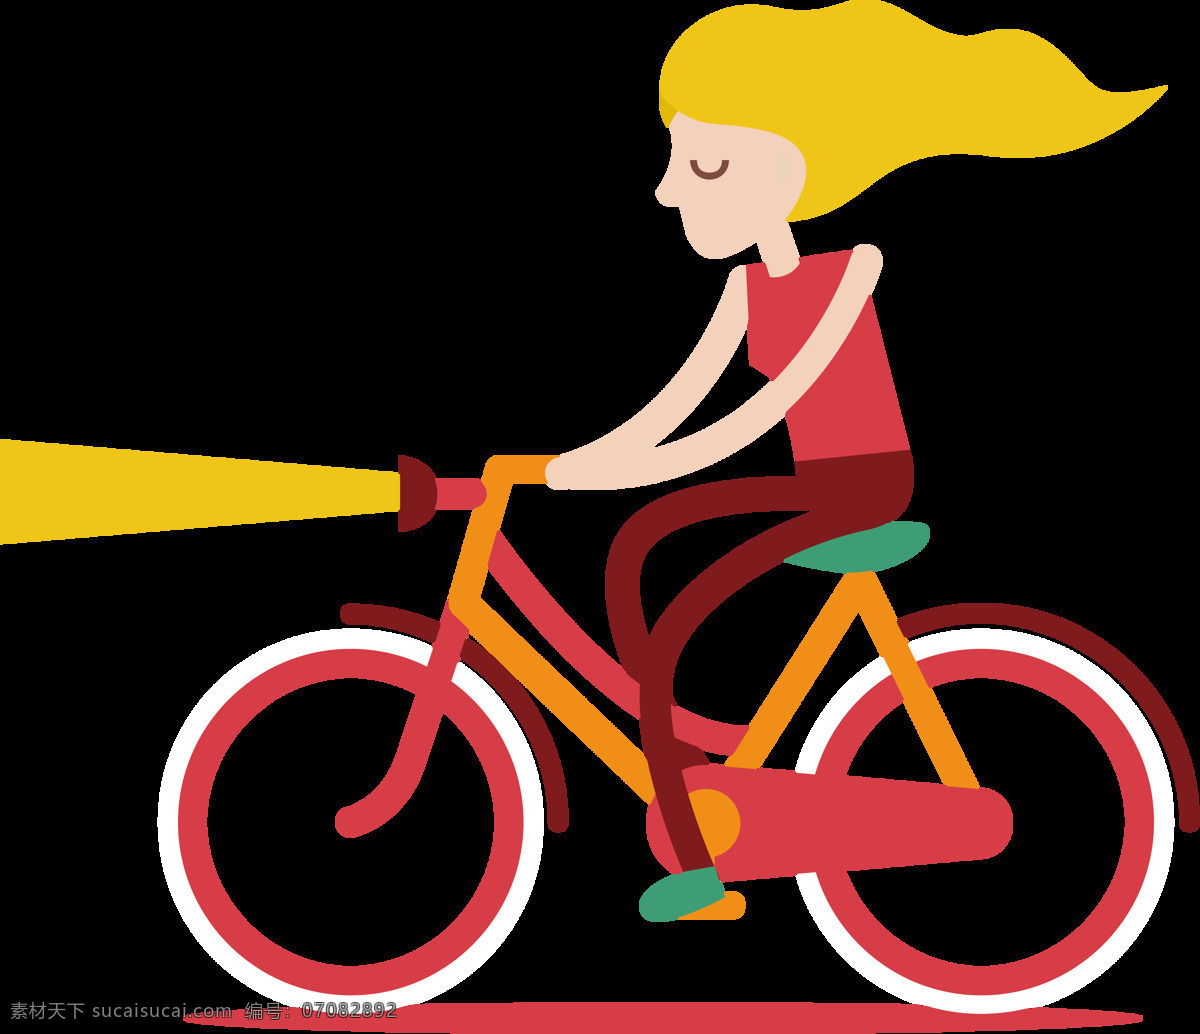 卡通 女人 骑 自行车 插画 免 抠 透明 共享单车 女式单车 男式单车 电动车 绿色低碳 绿色环保 环保电动车 健身单车 摩拜 ofo单车 小蓝单车 双人单车 多人单车